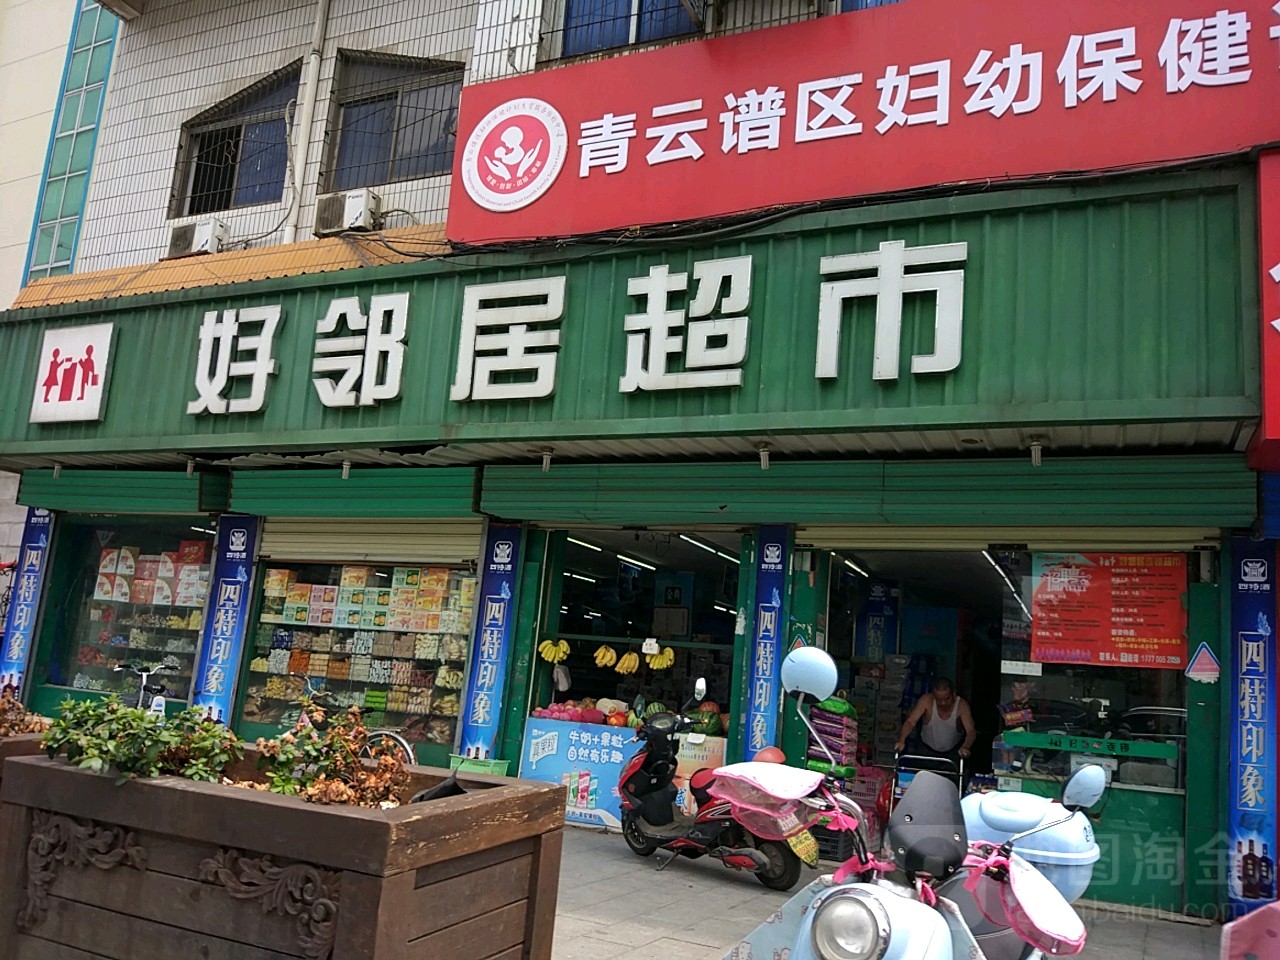 标签:购物 超市 农贸 水果店 果蔬超市好邻居超市(何坊西路店)共多少